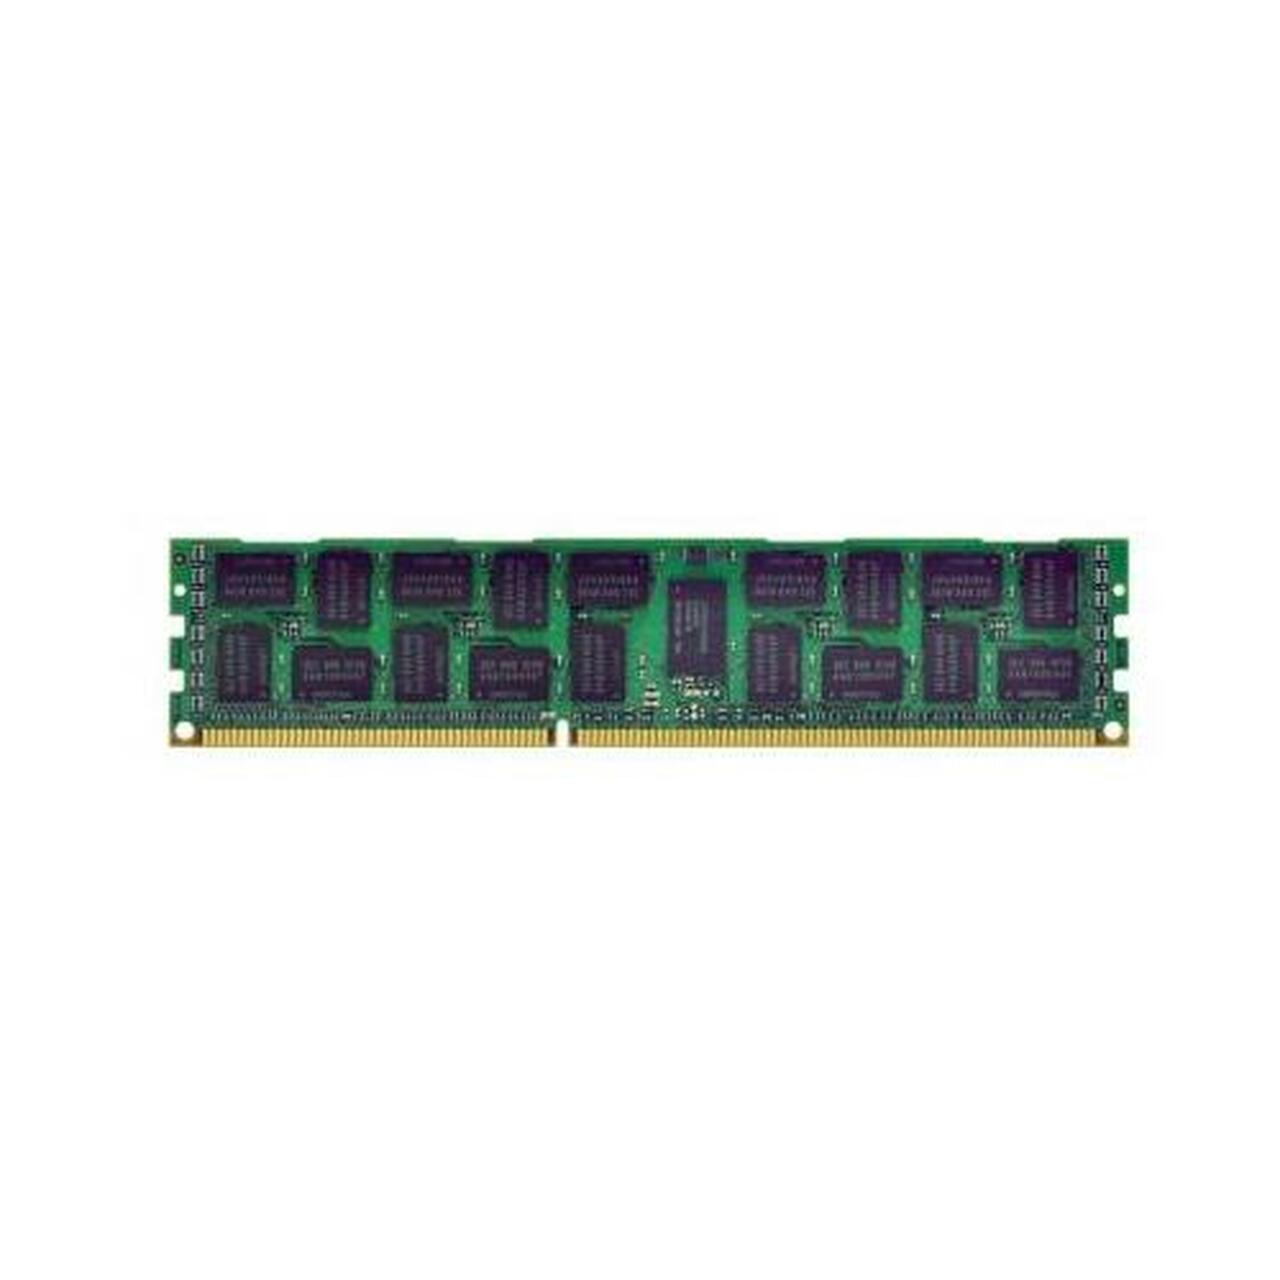 A000051610 | Toshiba 1GB DDR3 SoDimm Non ECC PC3-8500 1066Mhz 1Rx8 Memory